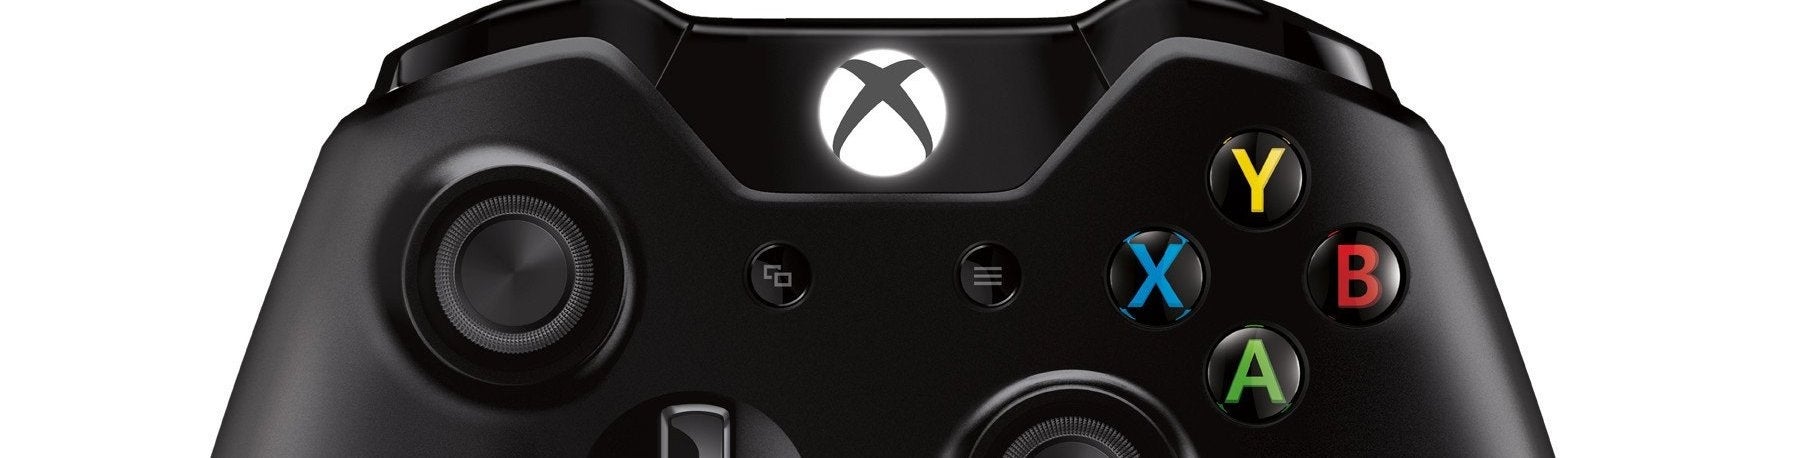 Imagen para Los 10 mejores juegos de Xbox One en 2014